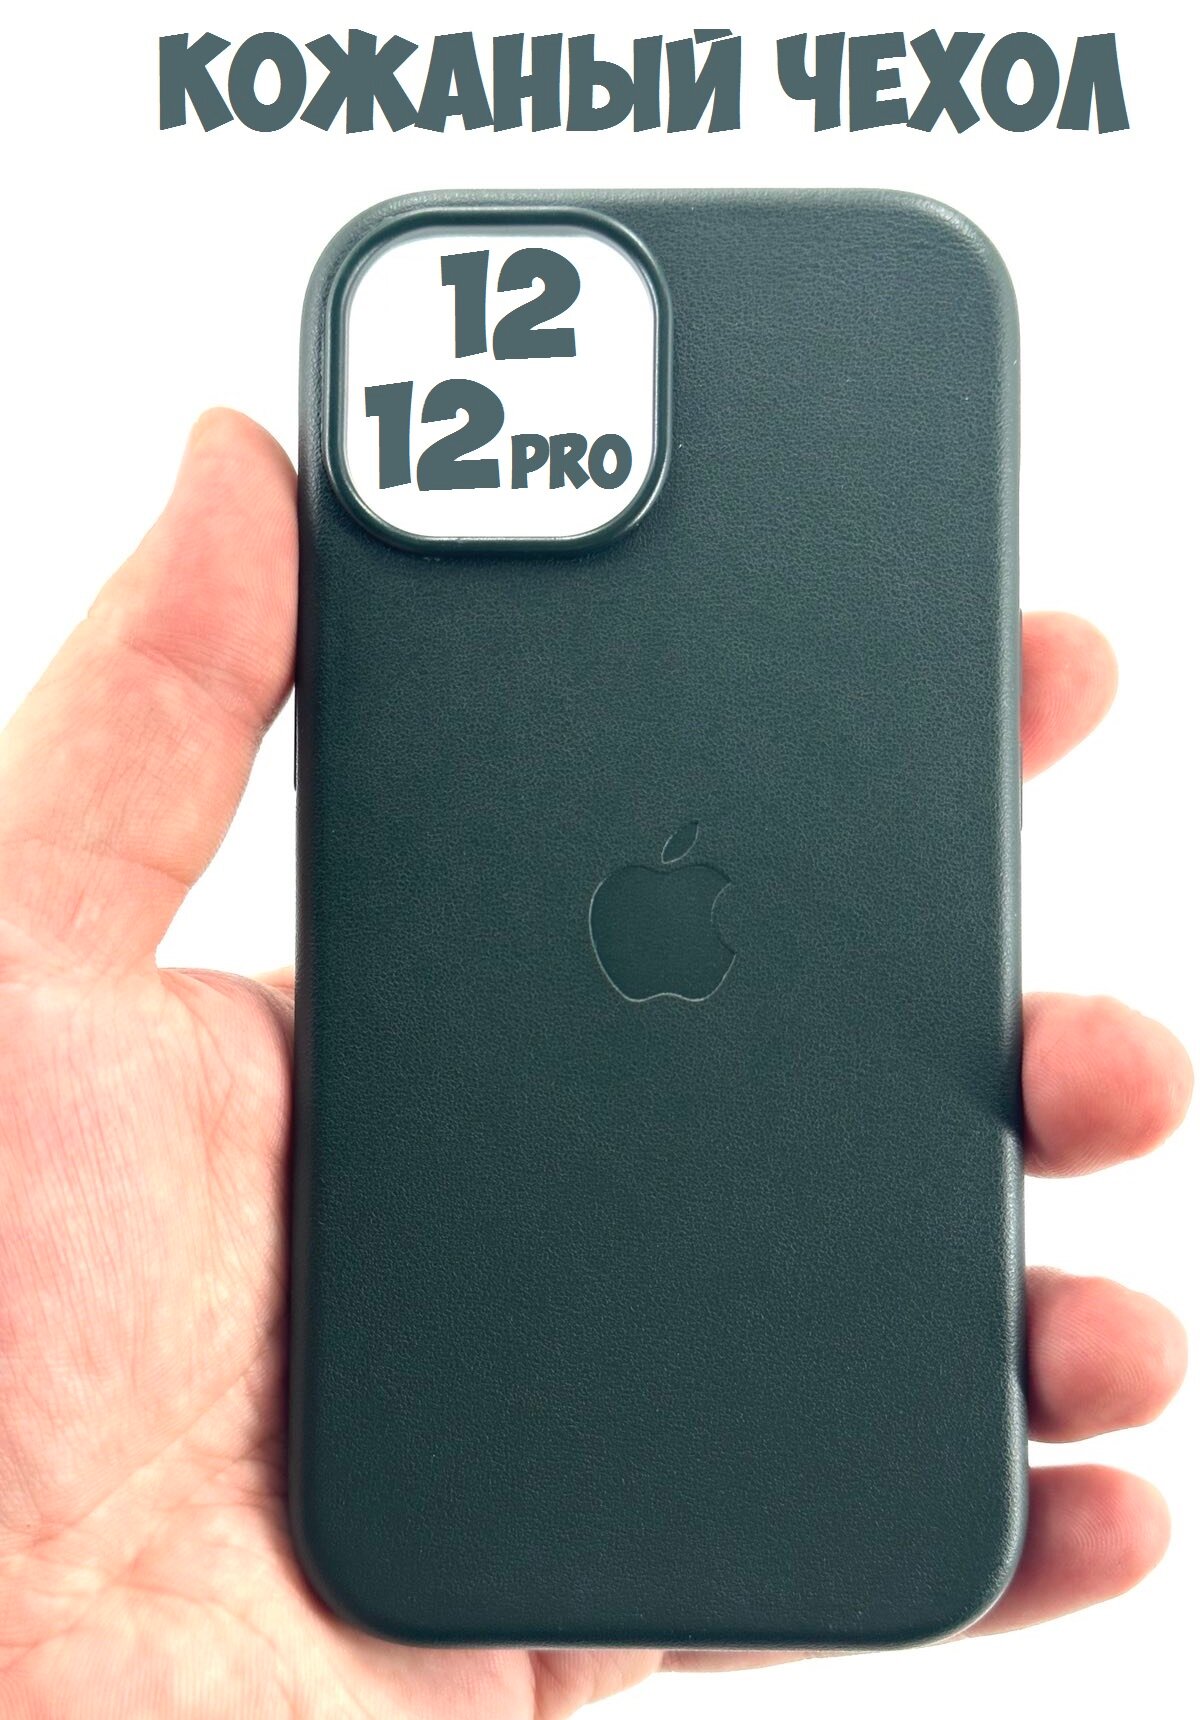 Кожаный чехол для iPhone 12/12 Pro Magsafe с анимацией зеленый(Forest green)